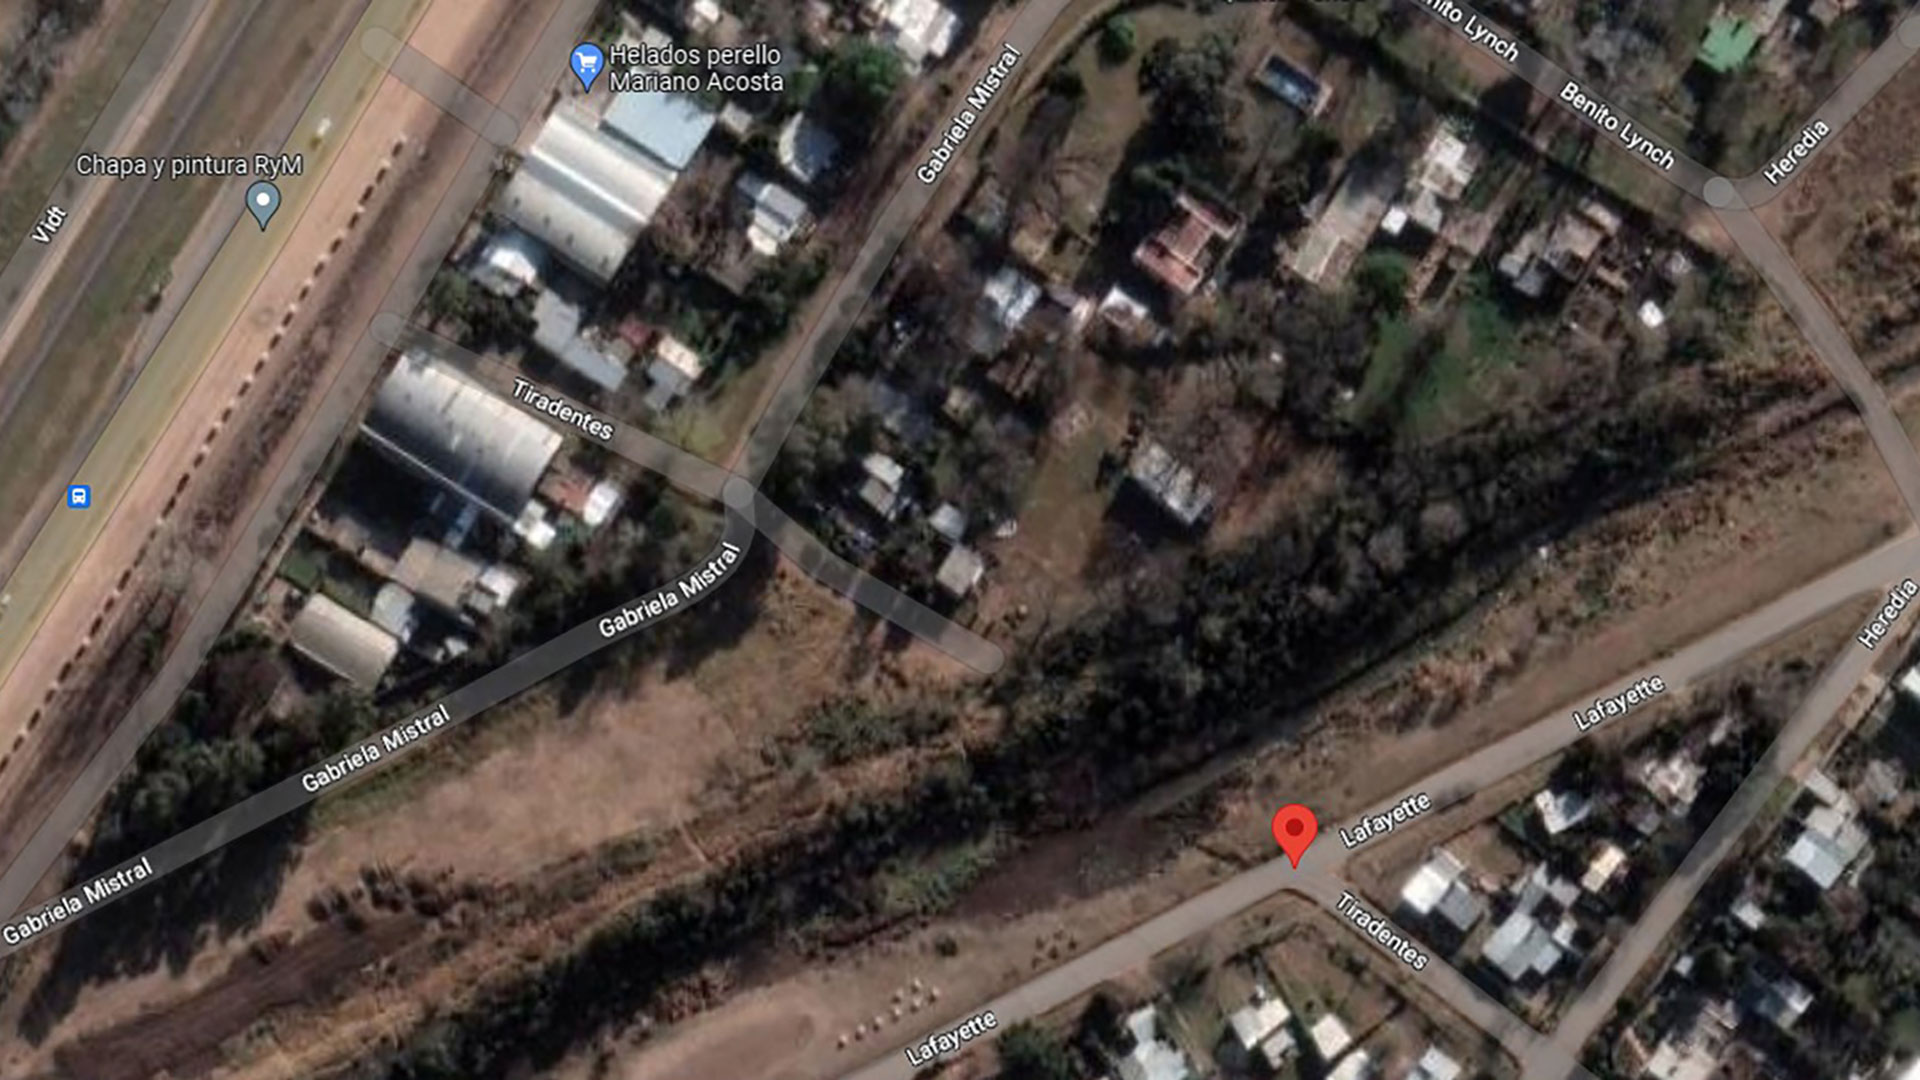 Mariano Acosta: la imagen satelital del descampado donde hallaron el cuerpo
